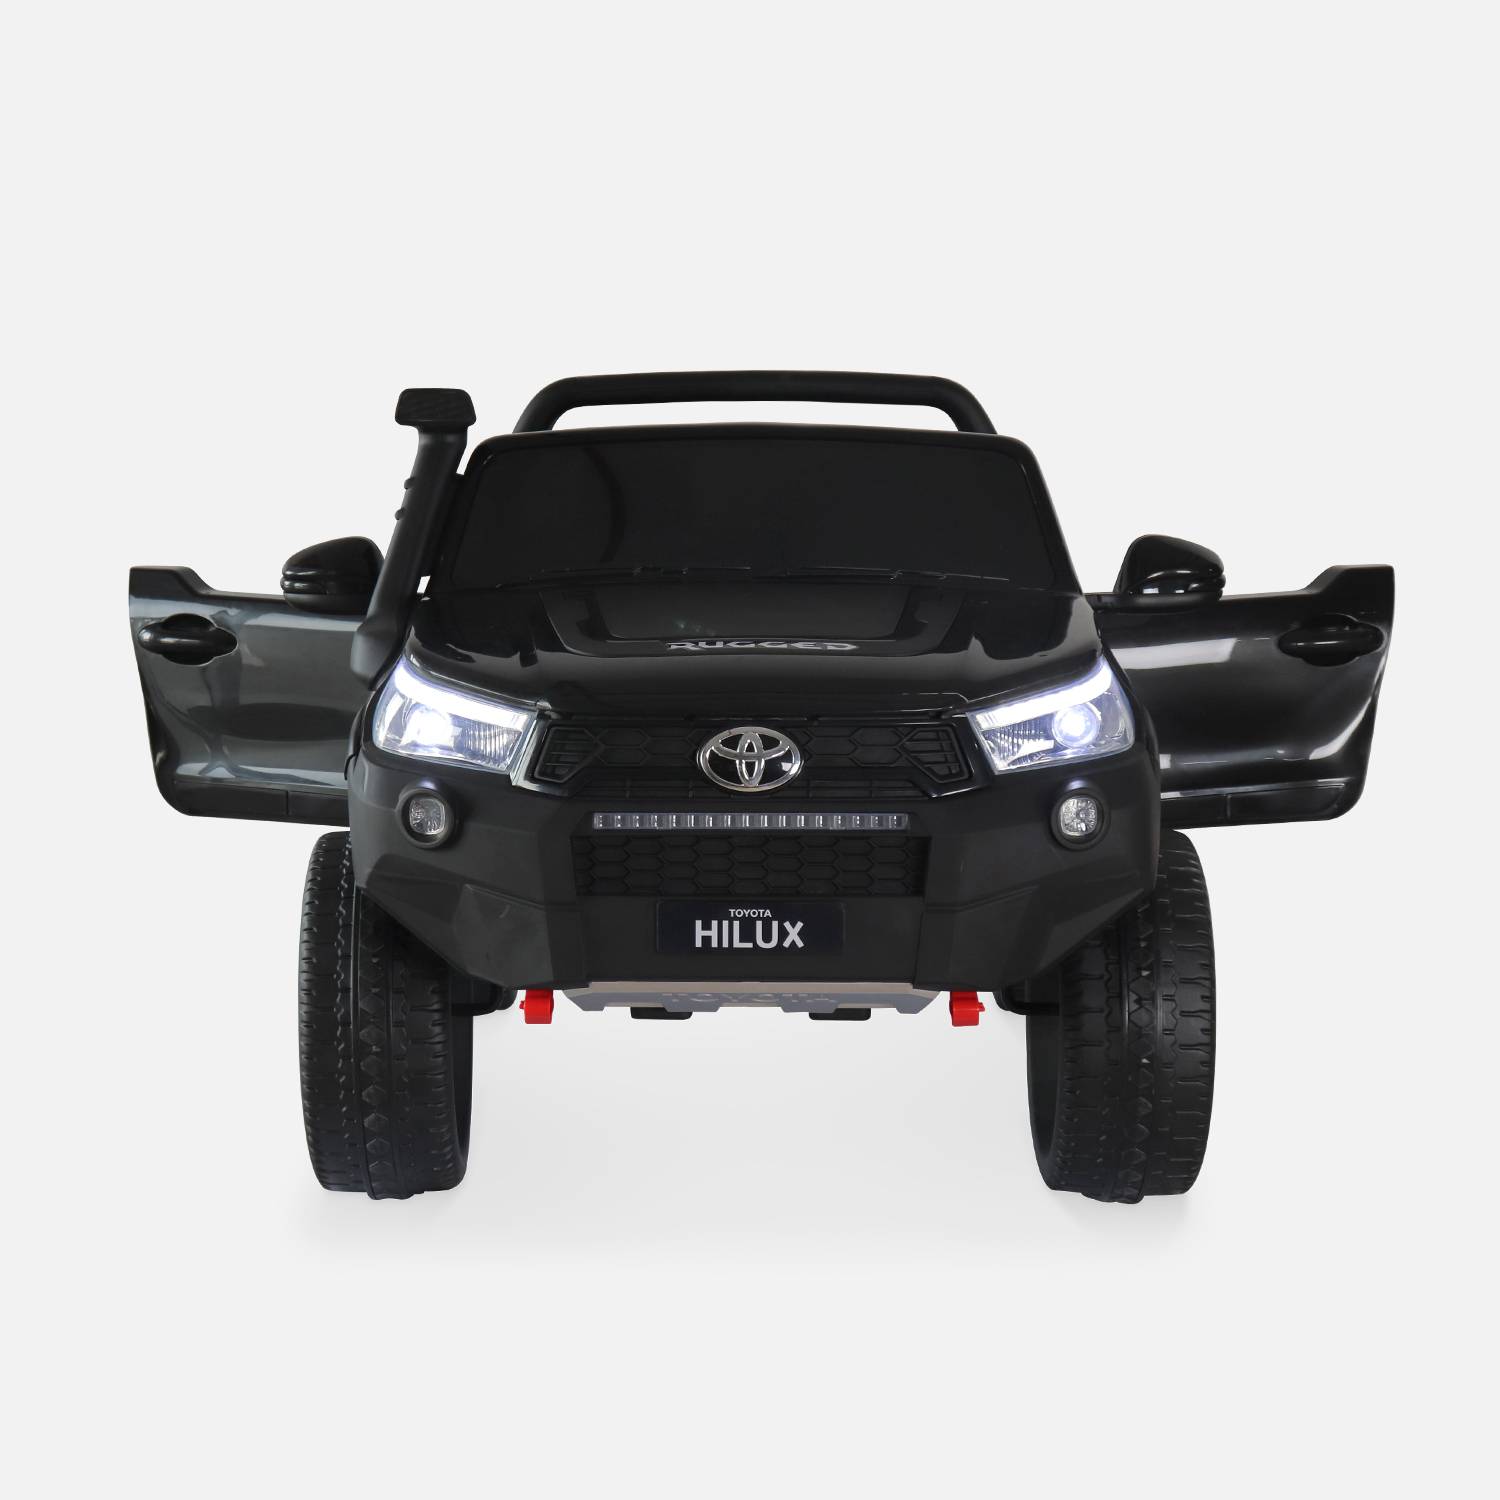 TOYOTA Hilux 2 roues motrices noir, voiture électrique 12V, 2 places, pour enfants avec autoradio, télécommande, MP3, port USB / carte SD, prise jack et phares fonctionnels Photo4